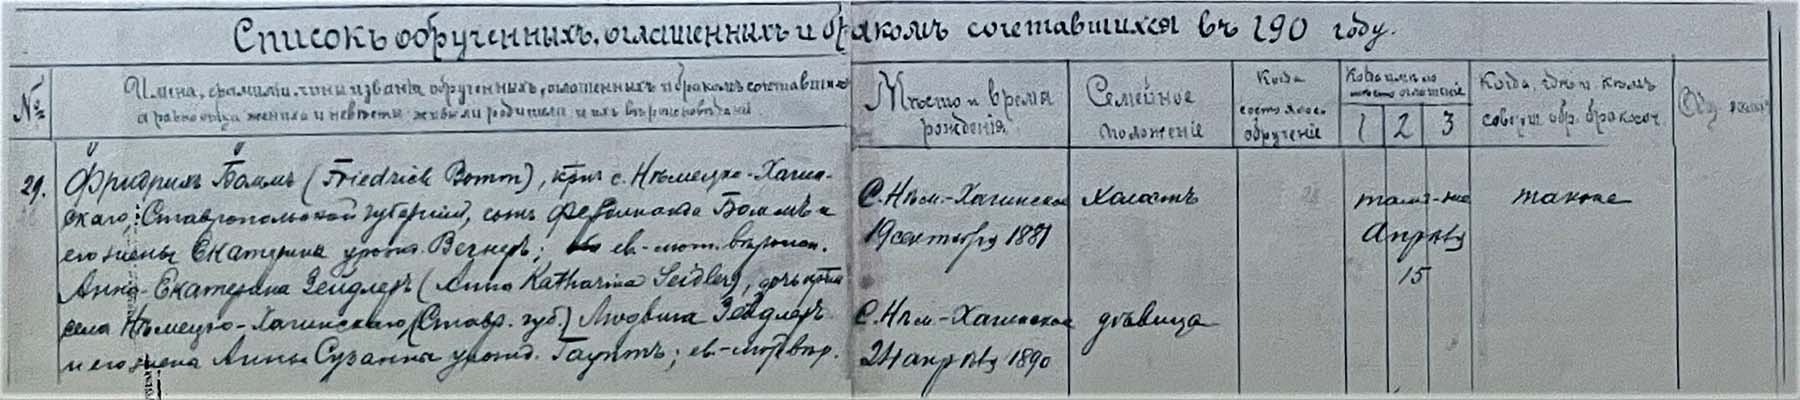 Eintrag im Kichenbuch von Kronental über die Trauung von Friedrich Bomm und Anna-Katharina Seidler am 15. April 1907